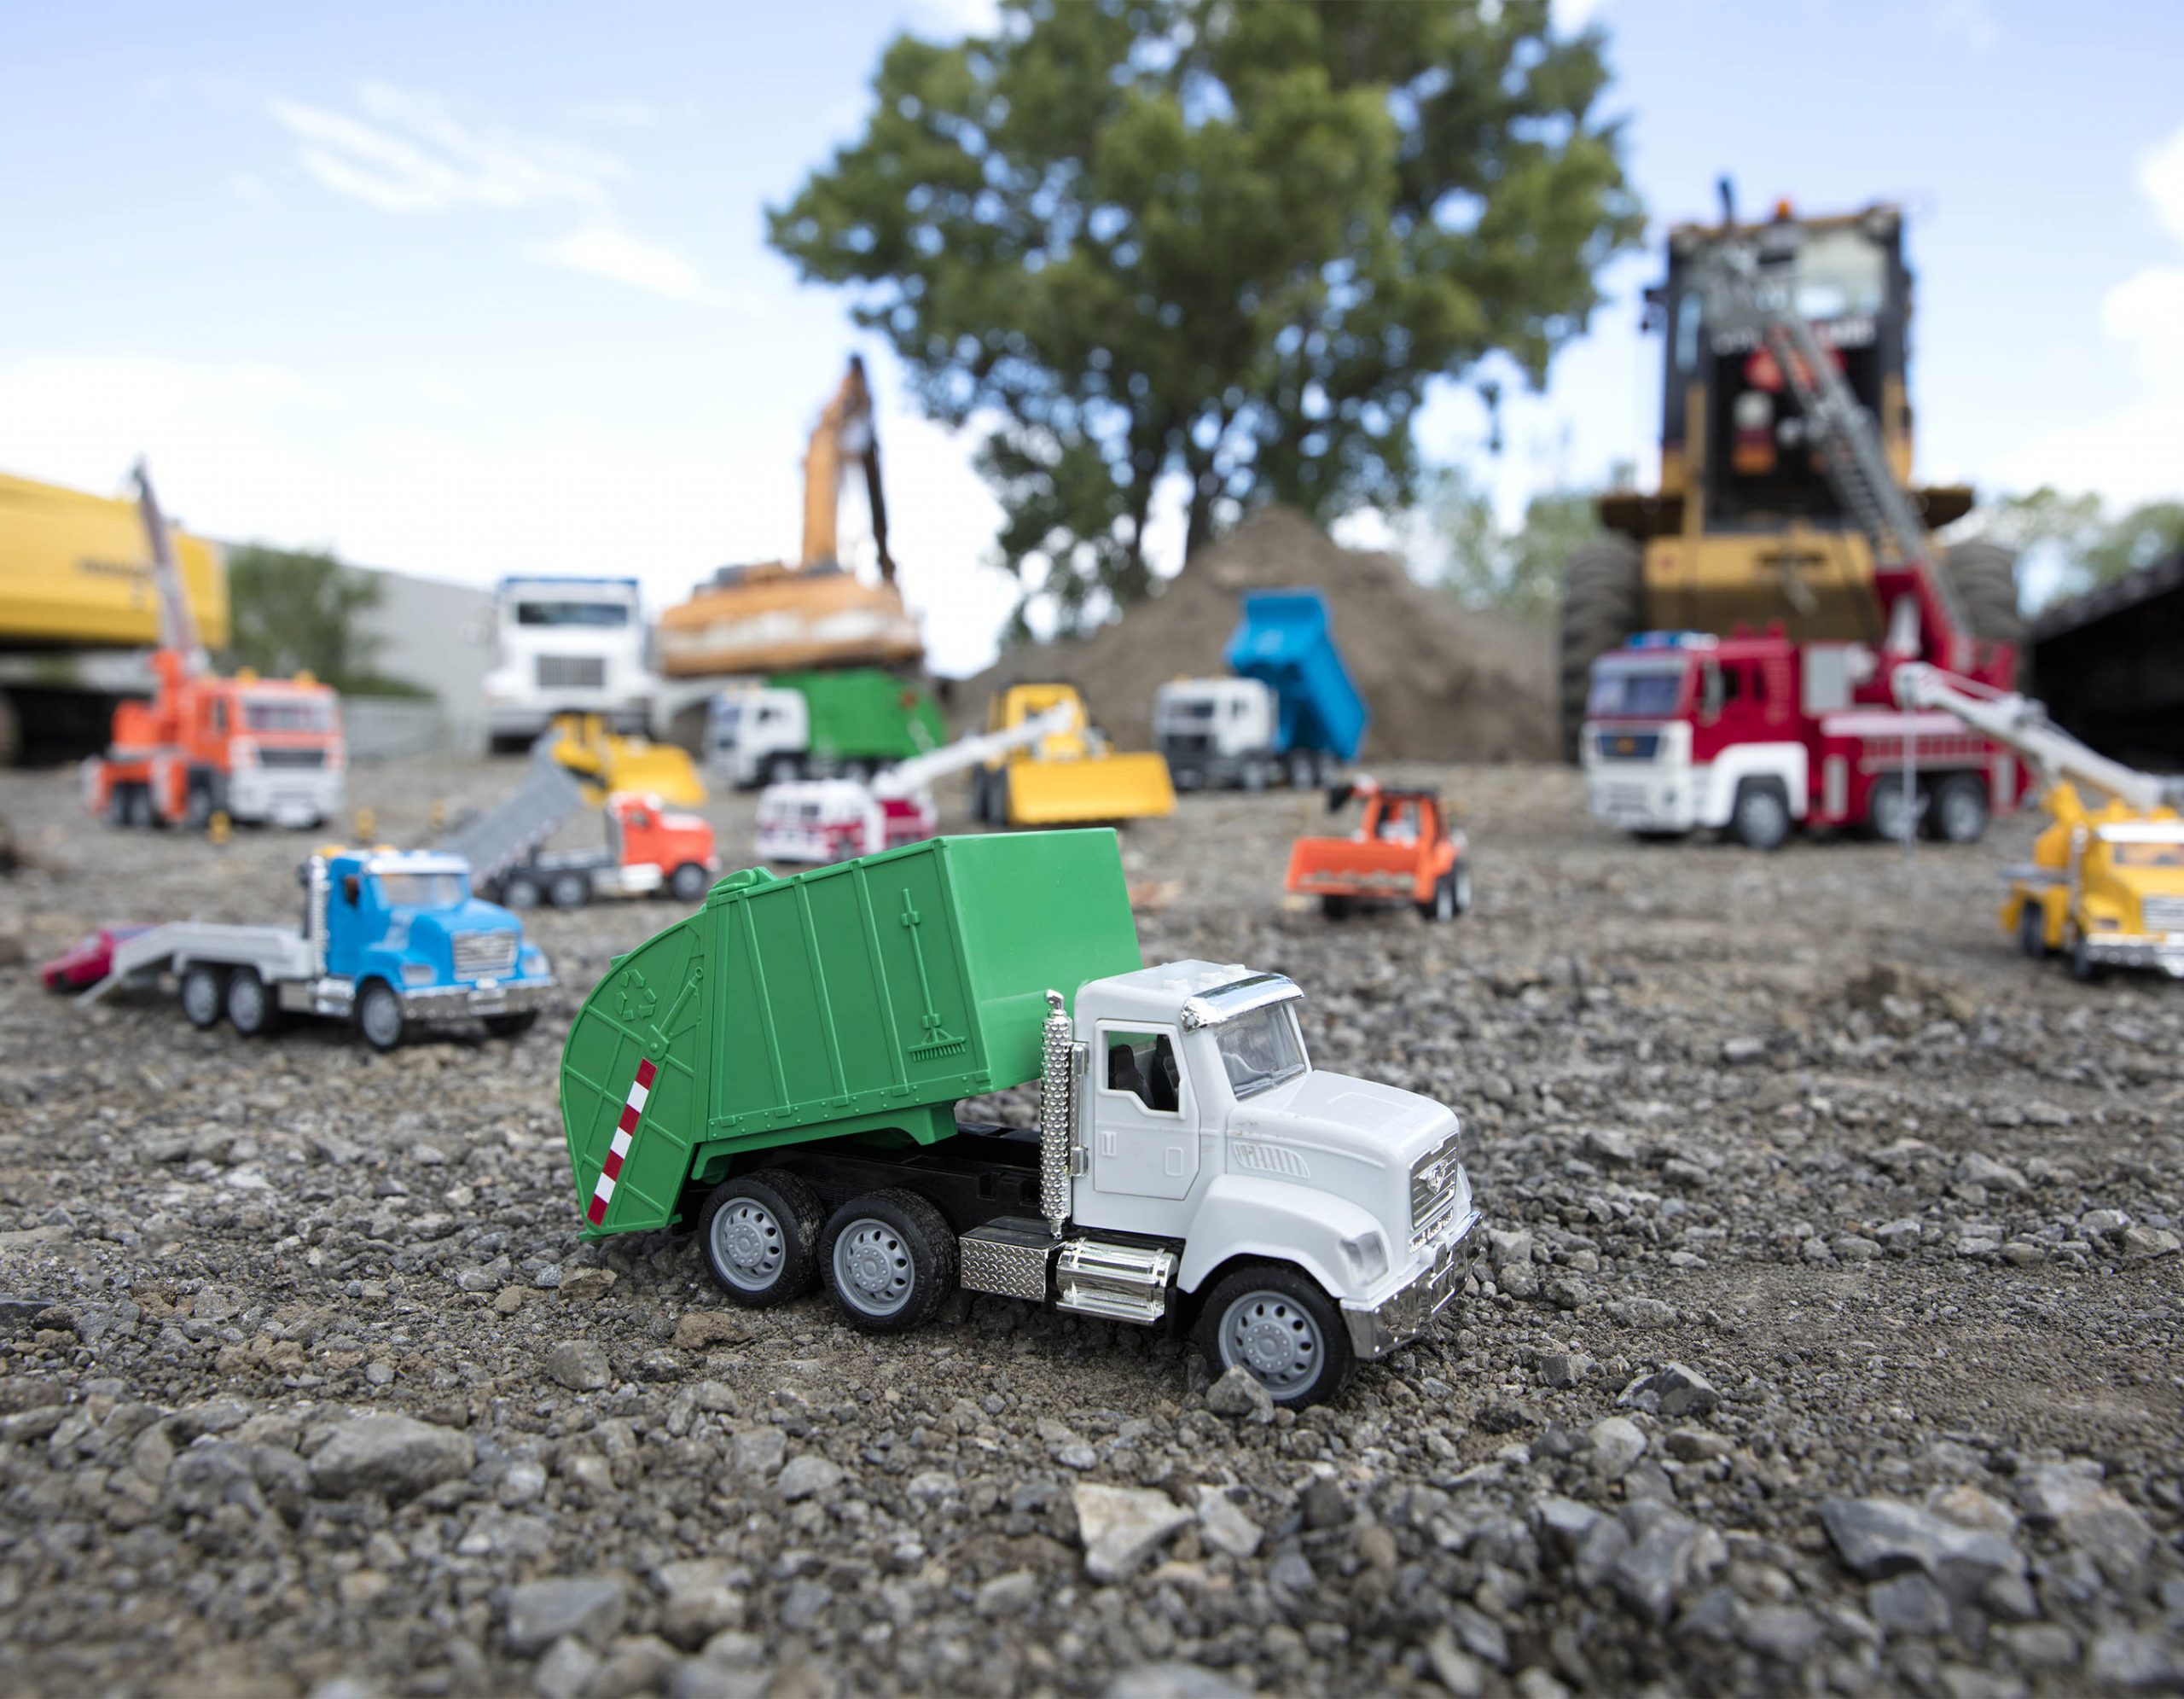 Driven Großer Müllabfuhrwagen 54 cm – Mit Lichtern, Geräuschen und  Funktionen – LKW Spielzeug Müllauto ab 3 Jahren, Kinder Spielzeug Mädchen  und Jungen: : Spielzeug